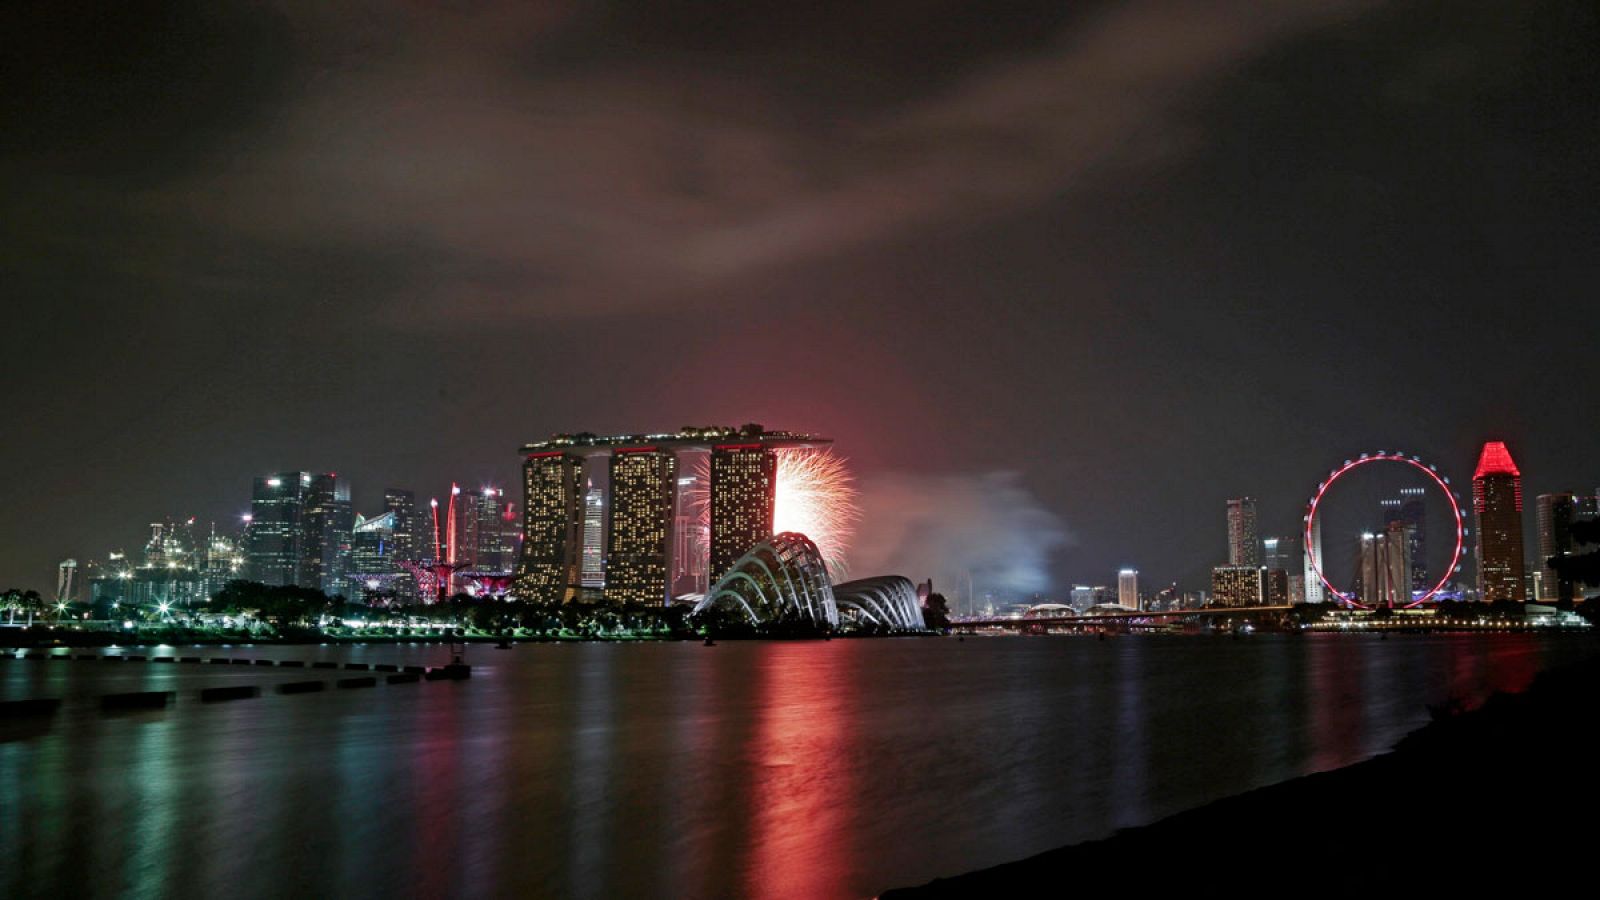 Vista de la ciudad-estado de Singapur desde la bahía durante uno de los espectáculos pirotécnicos por el 50 aniversario de su independencia.